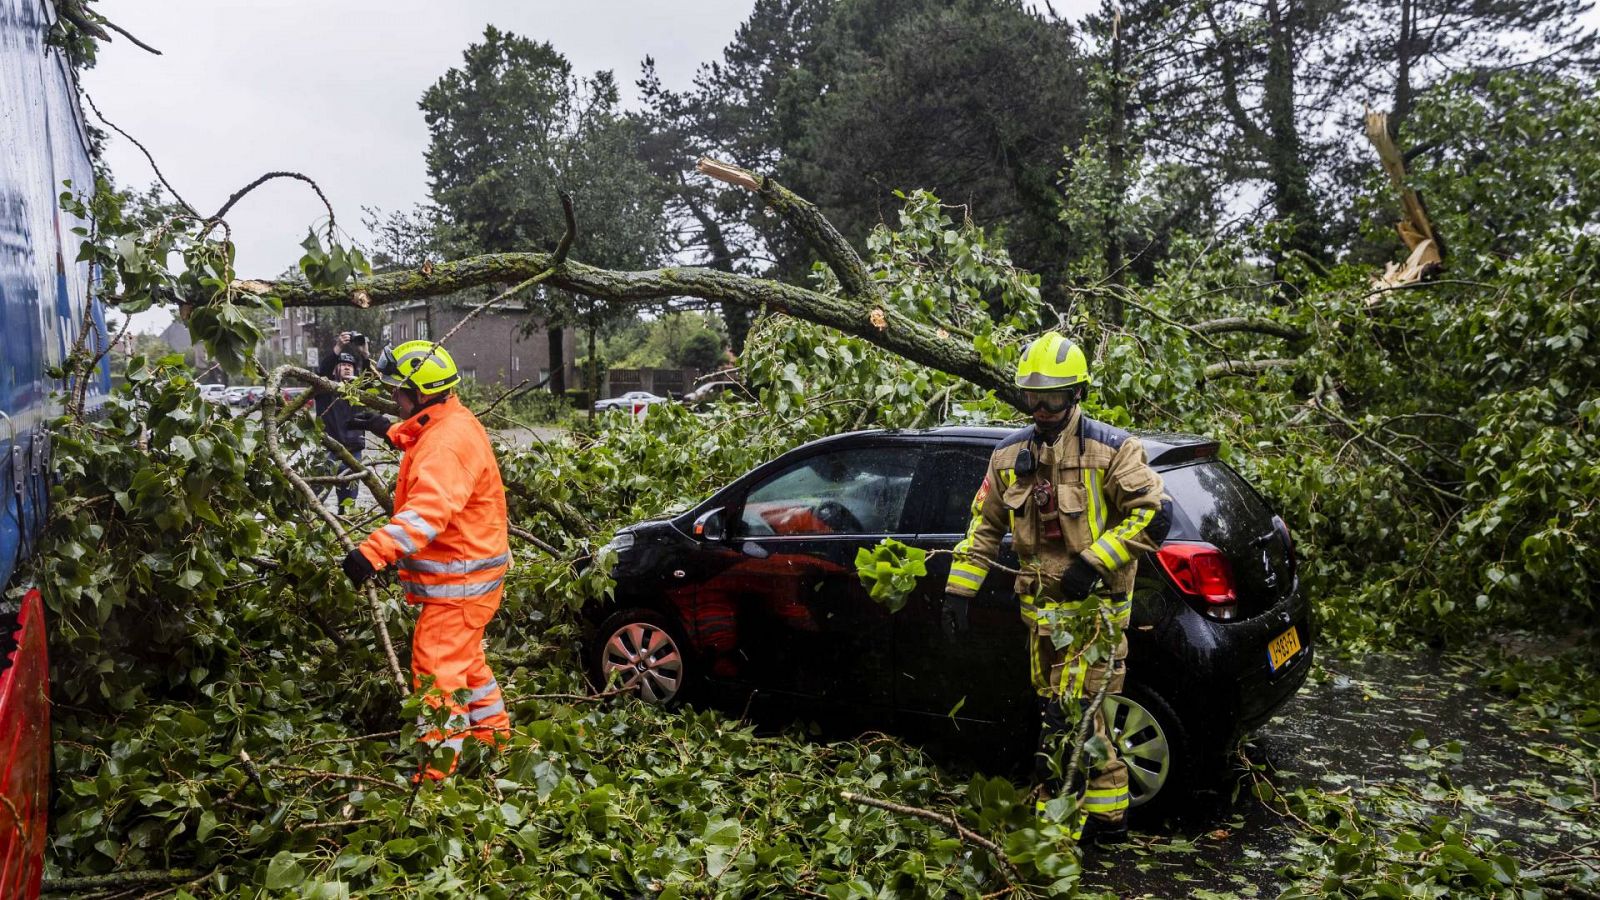 Los bomberos retiran un árbol caído tras la tormenta, en Haarlem, Países Bajos